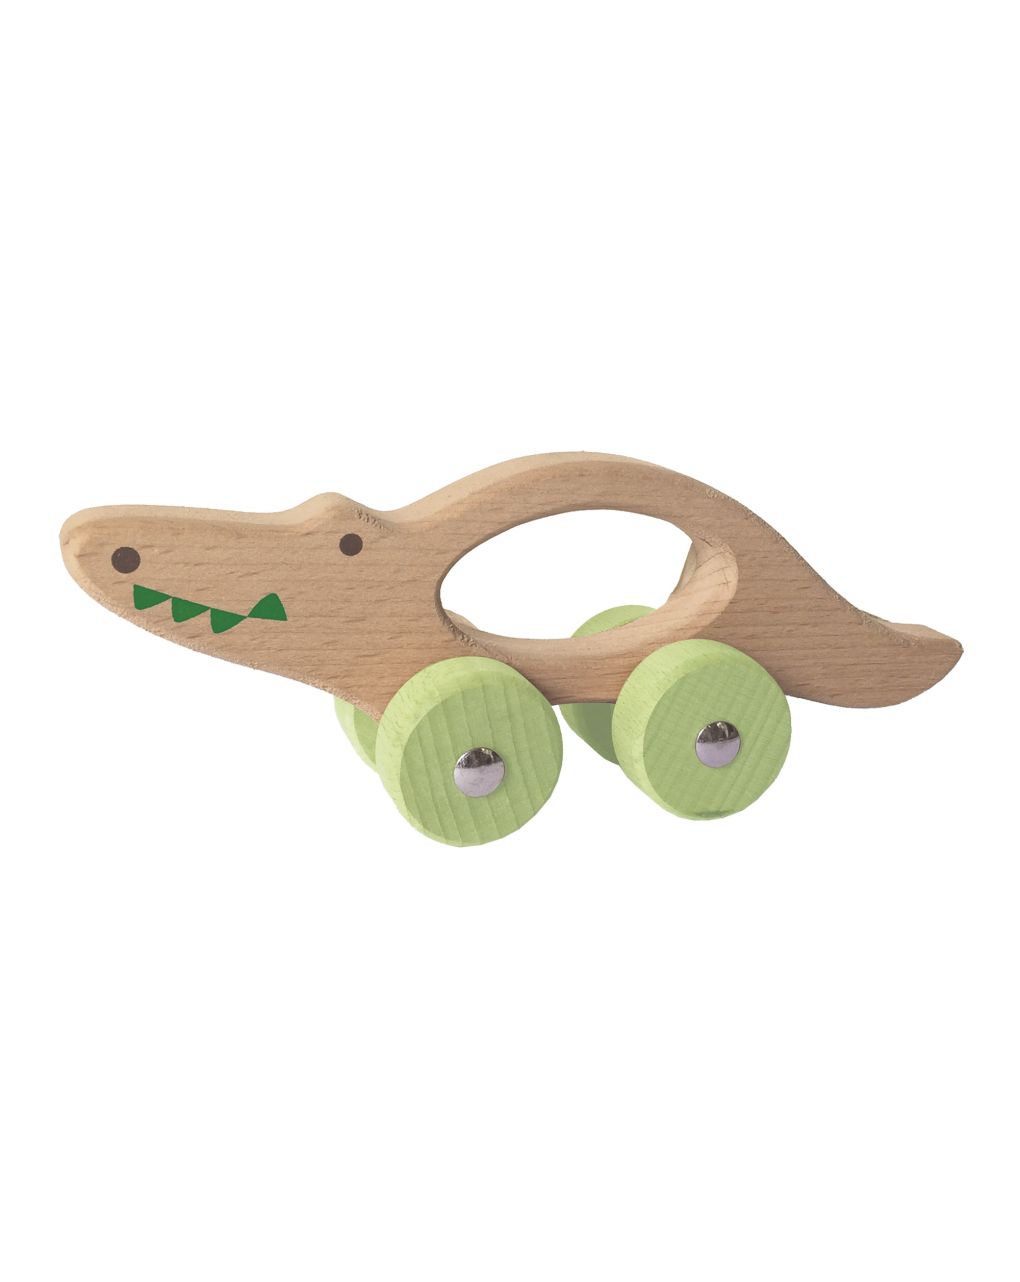 Wood n play - animais de madeira com rodas - Wood'N'Play